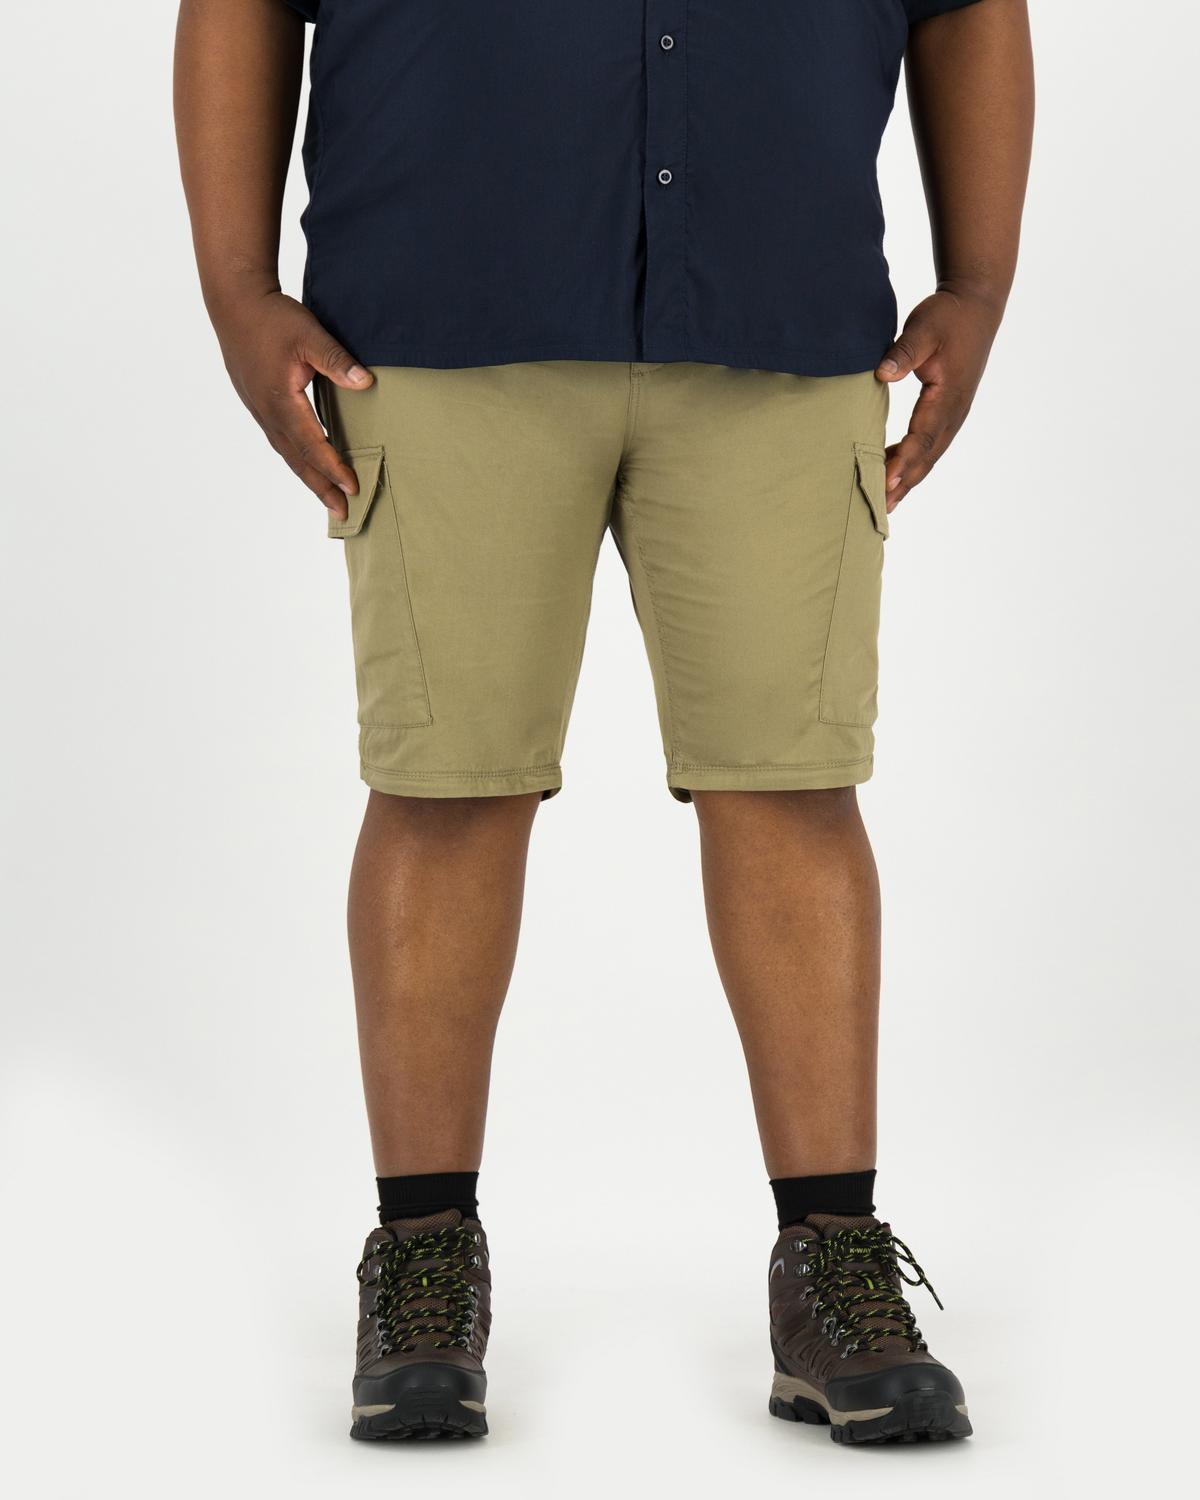 K-Way Elements Men's Safari Zip-off Pants Extended Sizes -  Khaki